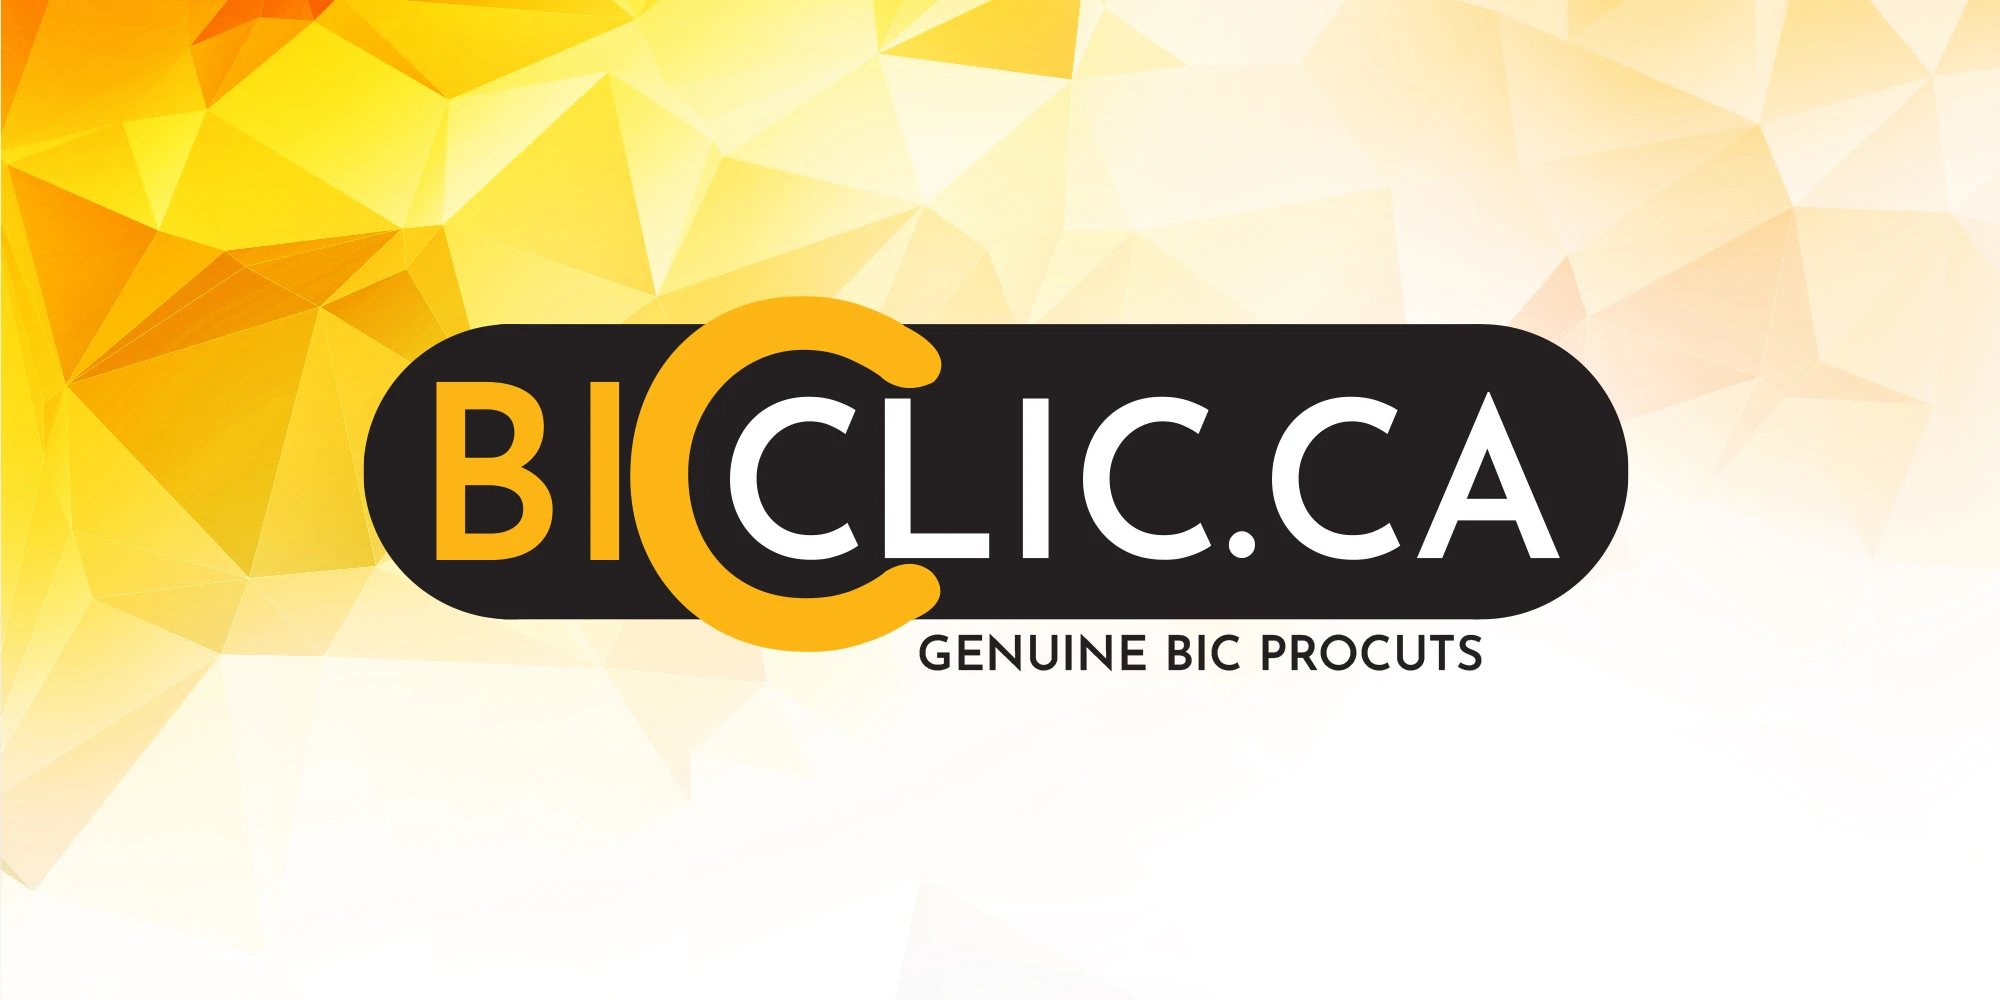 BicClic.ca